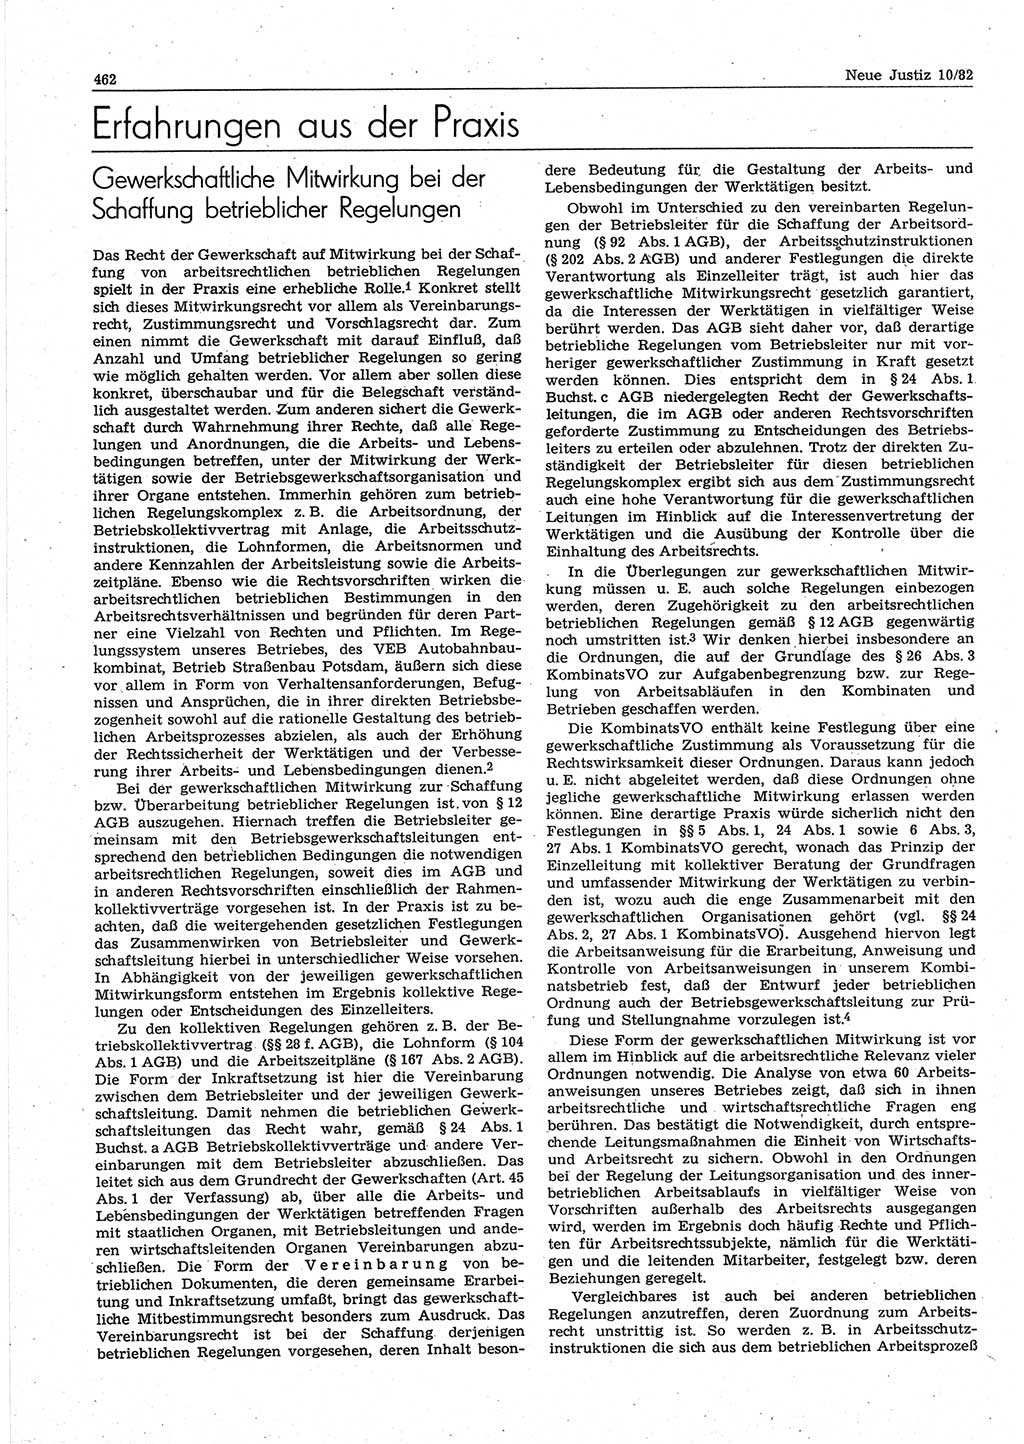 Neue Justiz (NJ), Zeitschrift für sozialistisches Recht und Gesetzlichkeit [Deutsche Demokratische Republik (DDR)], 36. Jahrgang 1982, Seite 462 (NJ DDR 1982, S. 462)